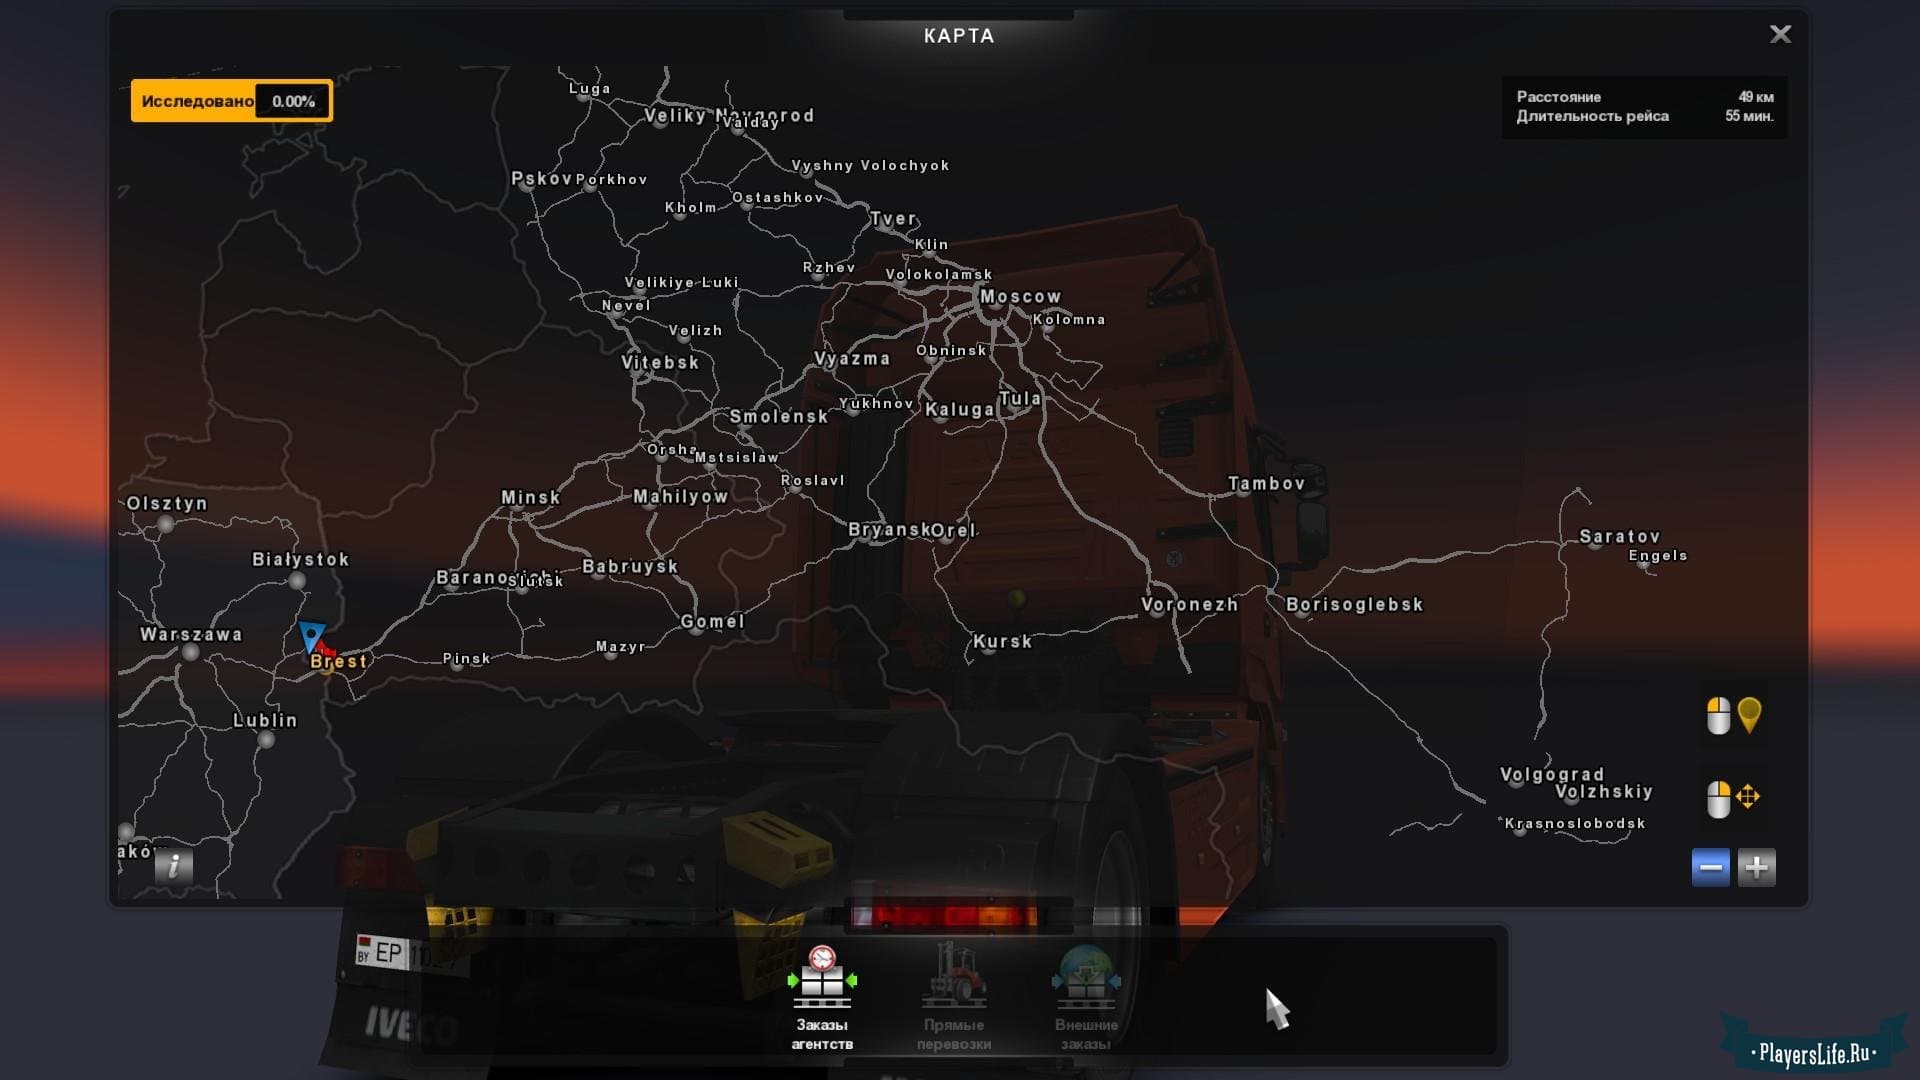 Мод на карту украины. Карта рус мап для етс 2. Euro Truck Simulator 2 карта. Карта РУСМАП для етс 2. Евротрак симулятор карта России.